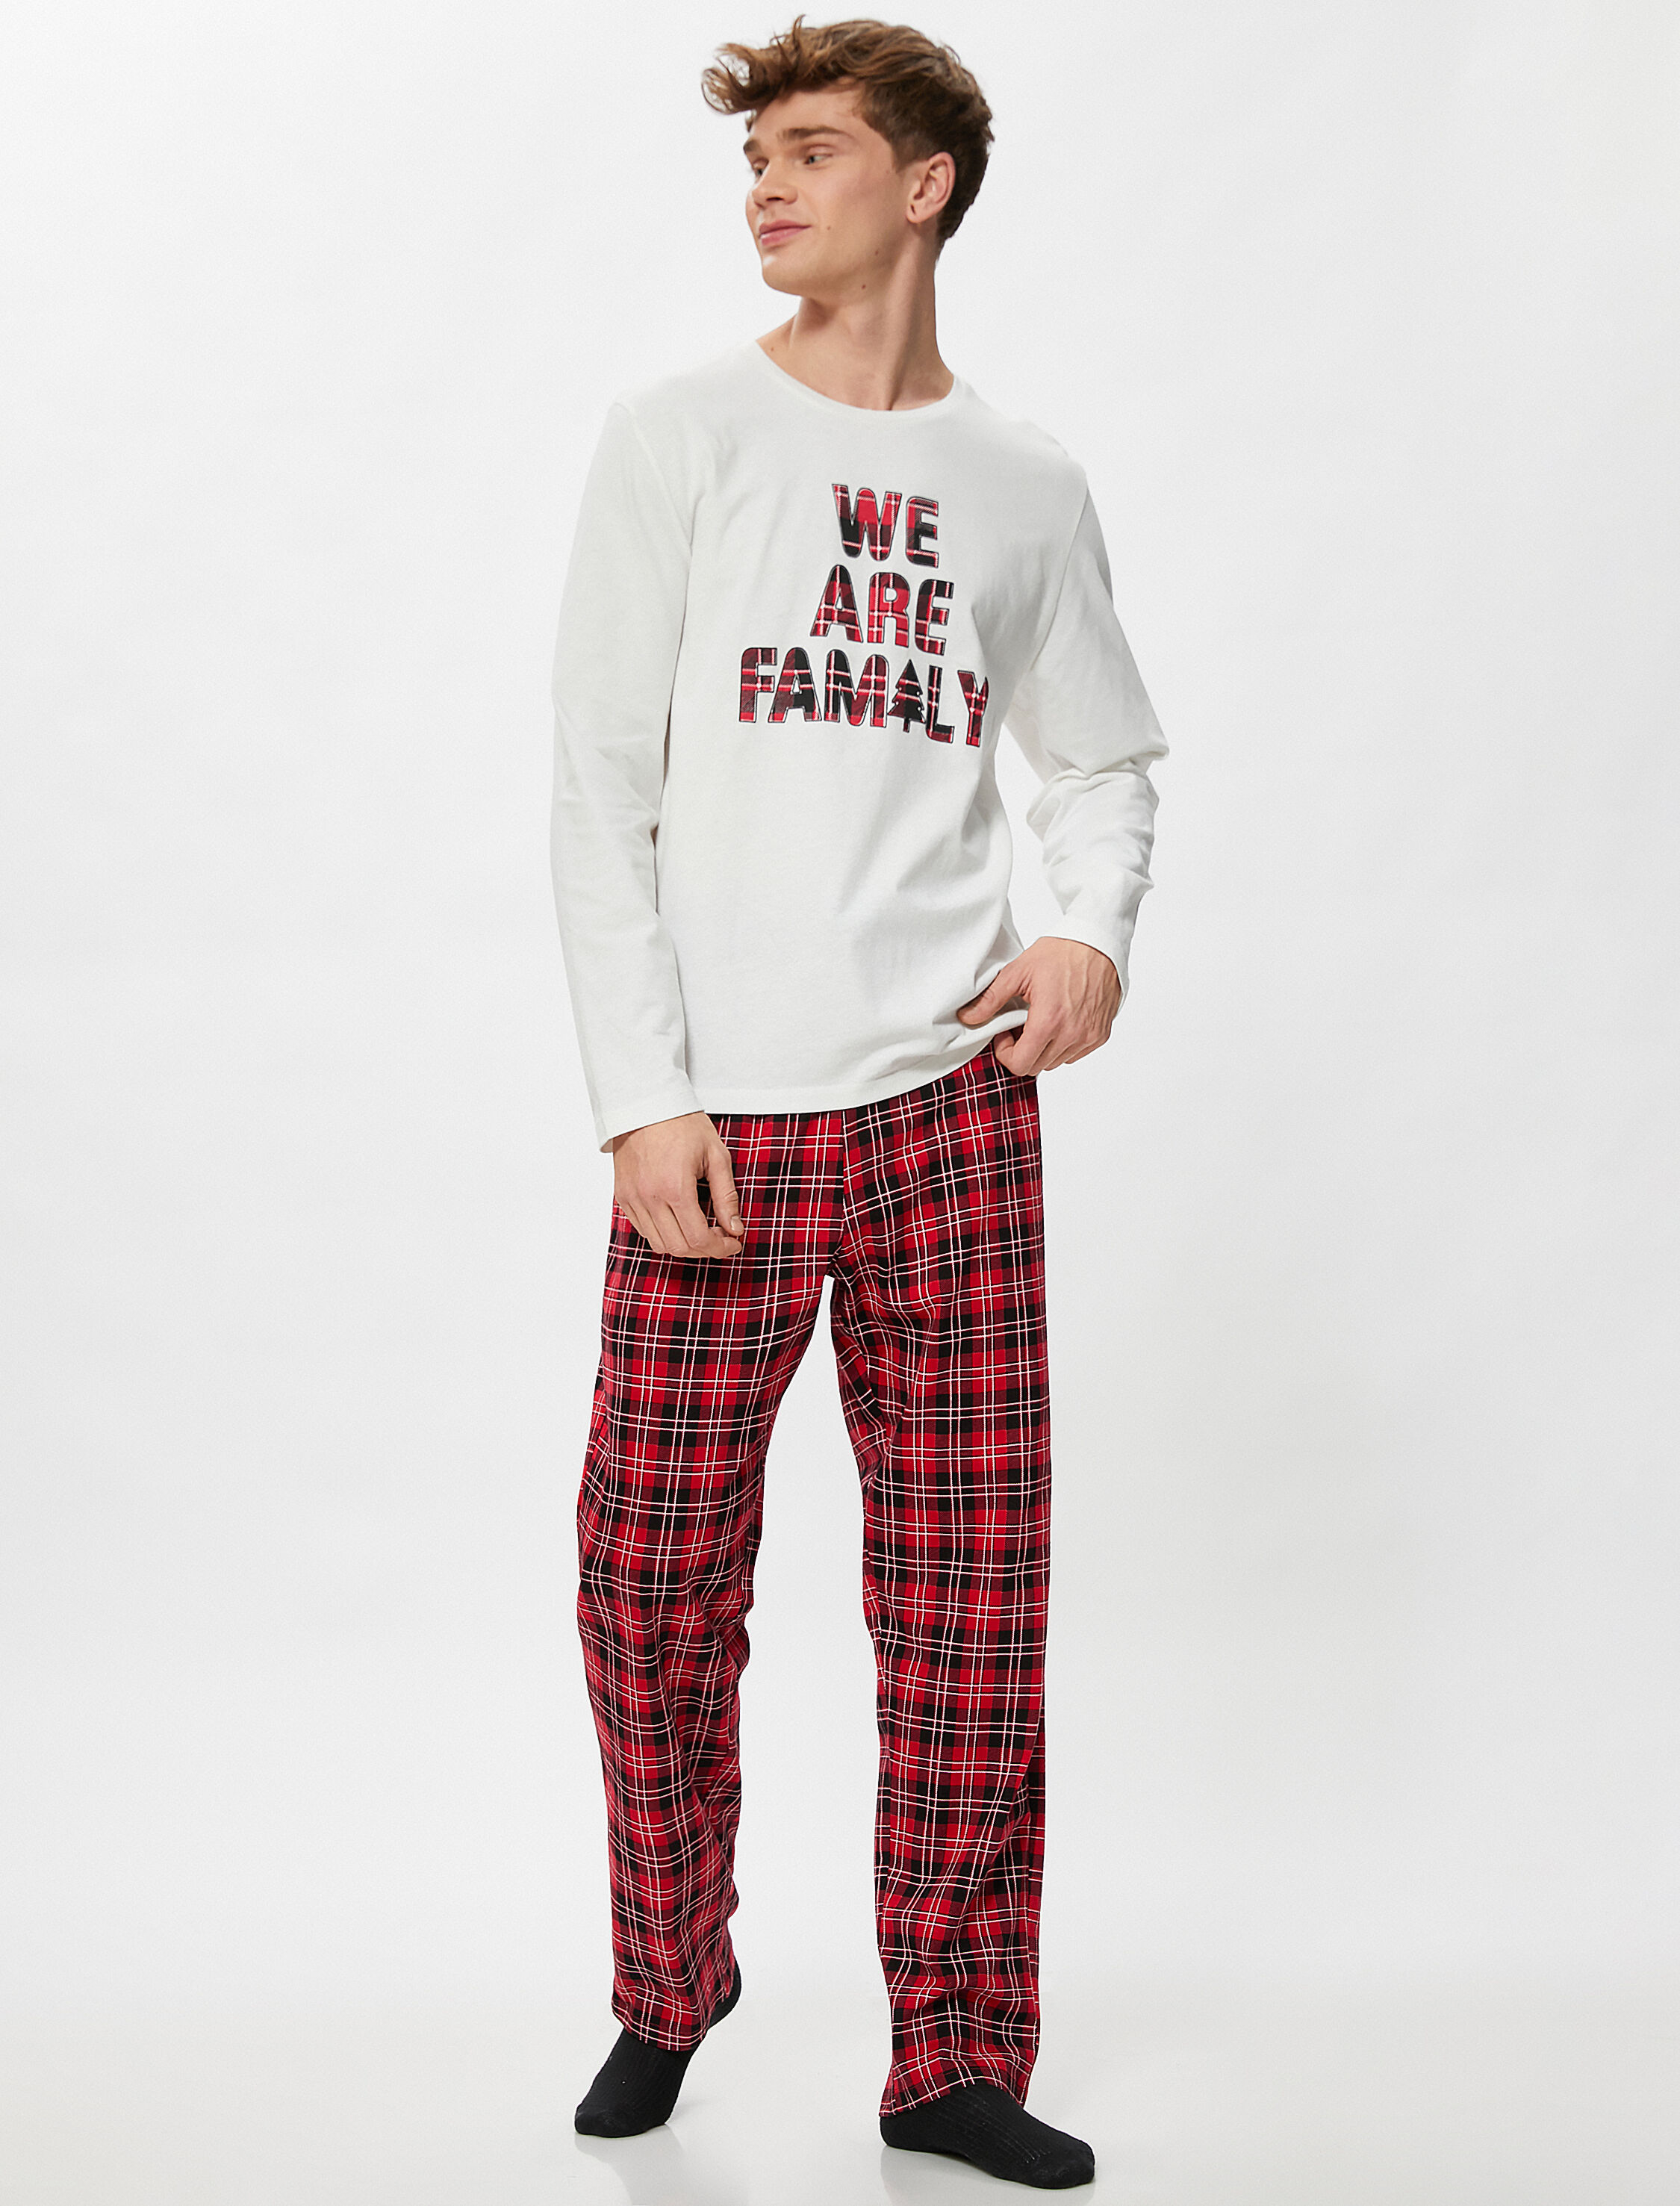 Koton Yılbaşı Temalı Kışlık Pijama Takımı Slogan Baskılı Kareli. 4